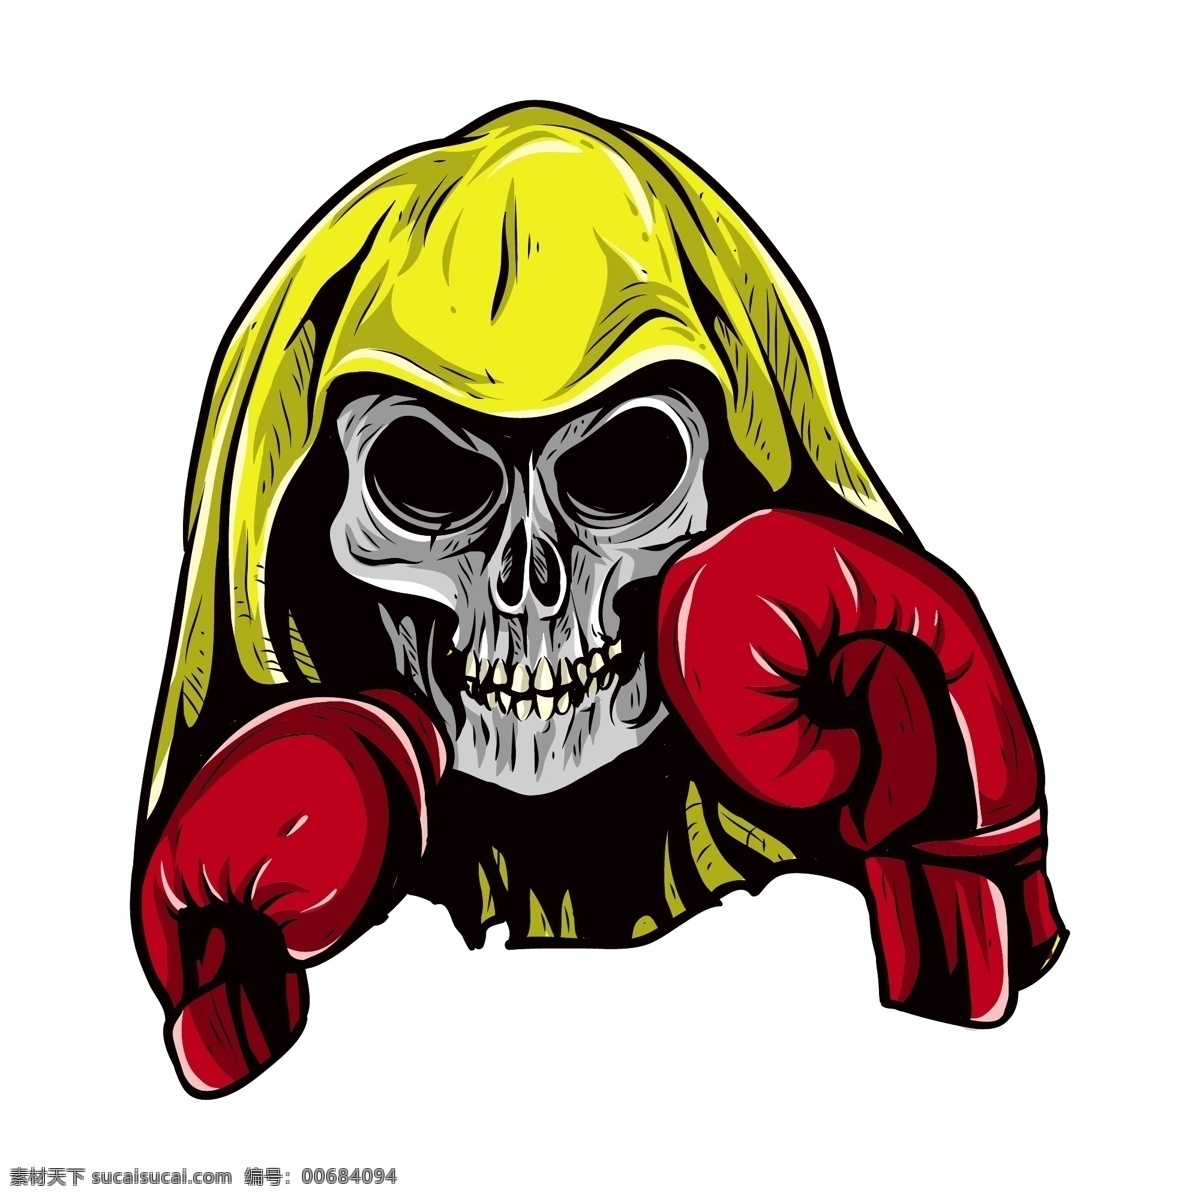 骷髅拳击手 骷髅 拳击 拳击运动 体育运动漫画 卡通漫画 卡通插画 体育运动 生活百科 矢量素材 白色